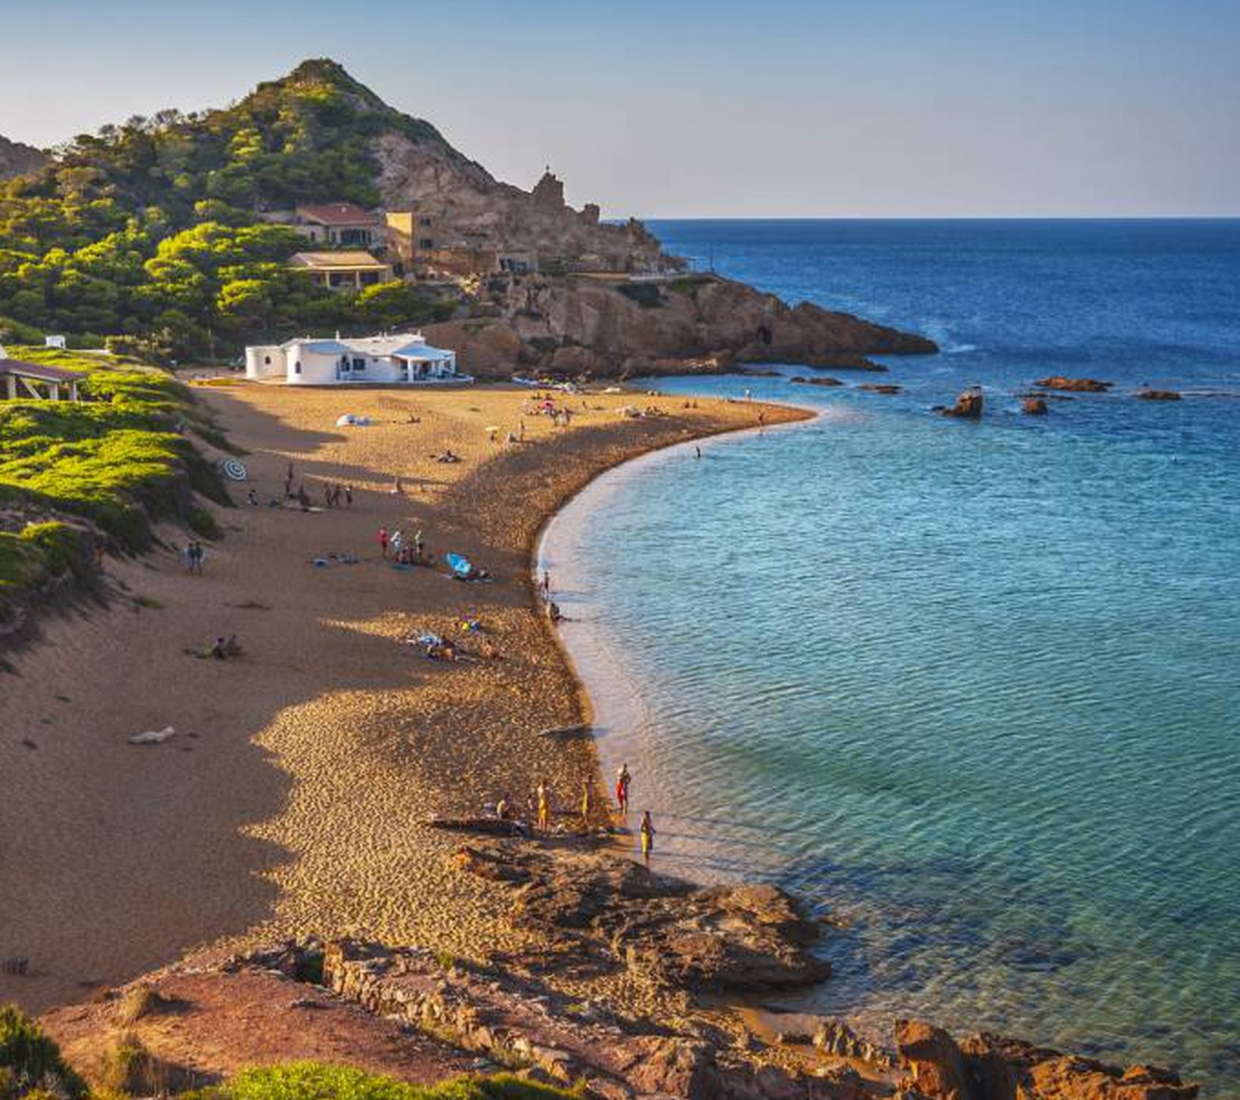 Seleção dos melhores e mais bonitos hotéis e casas de férias em Menorca